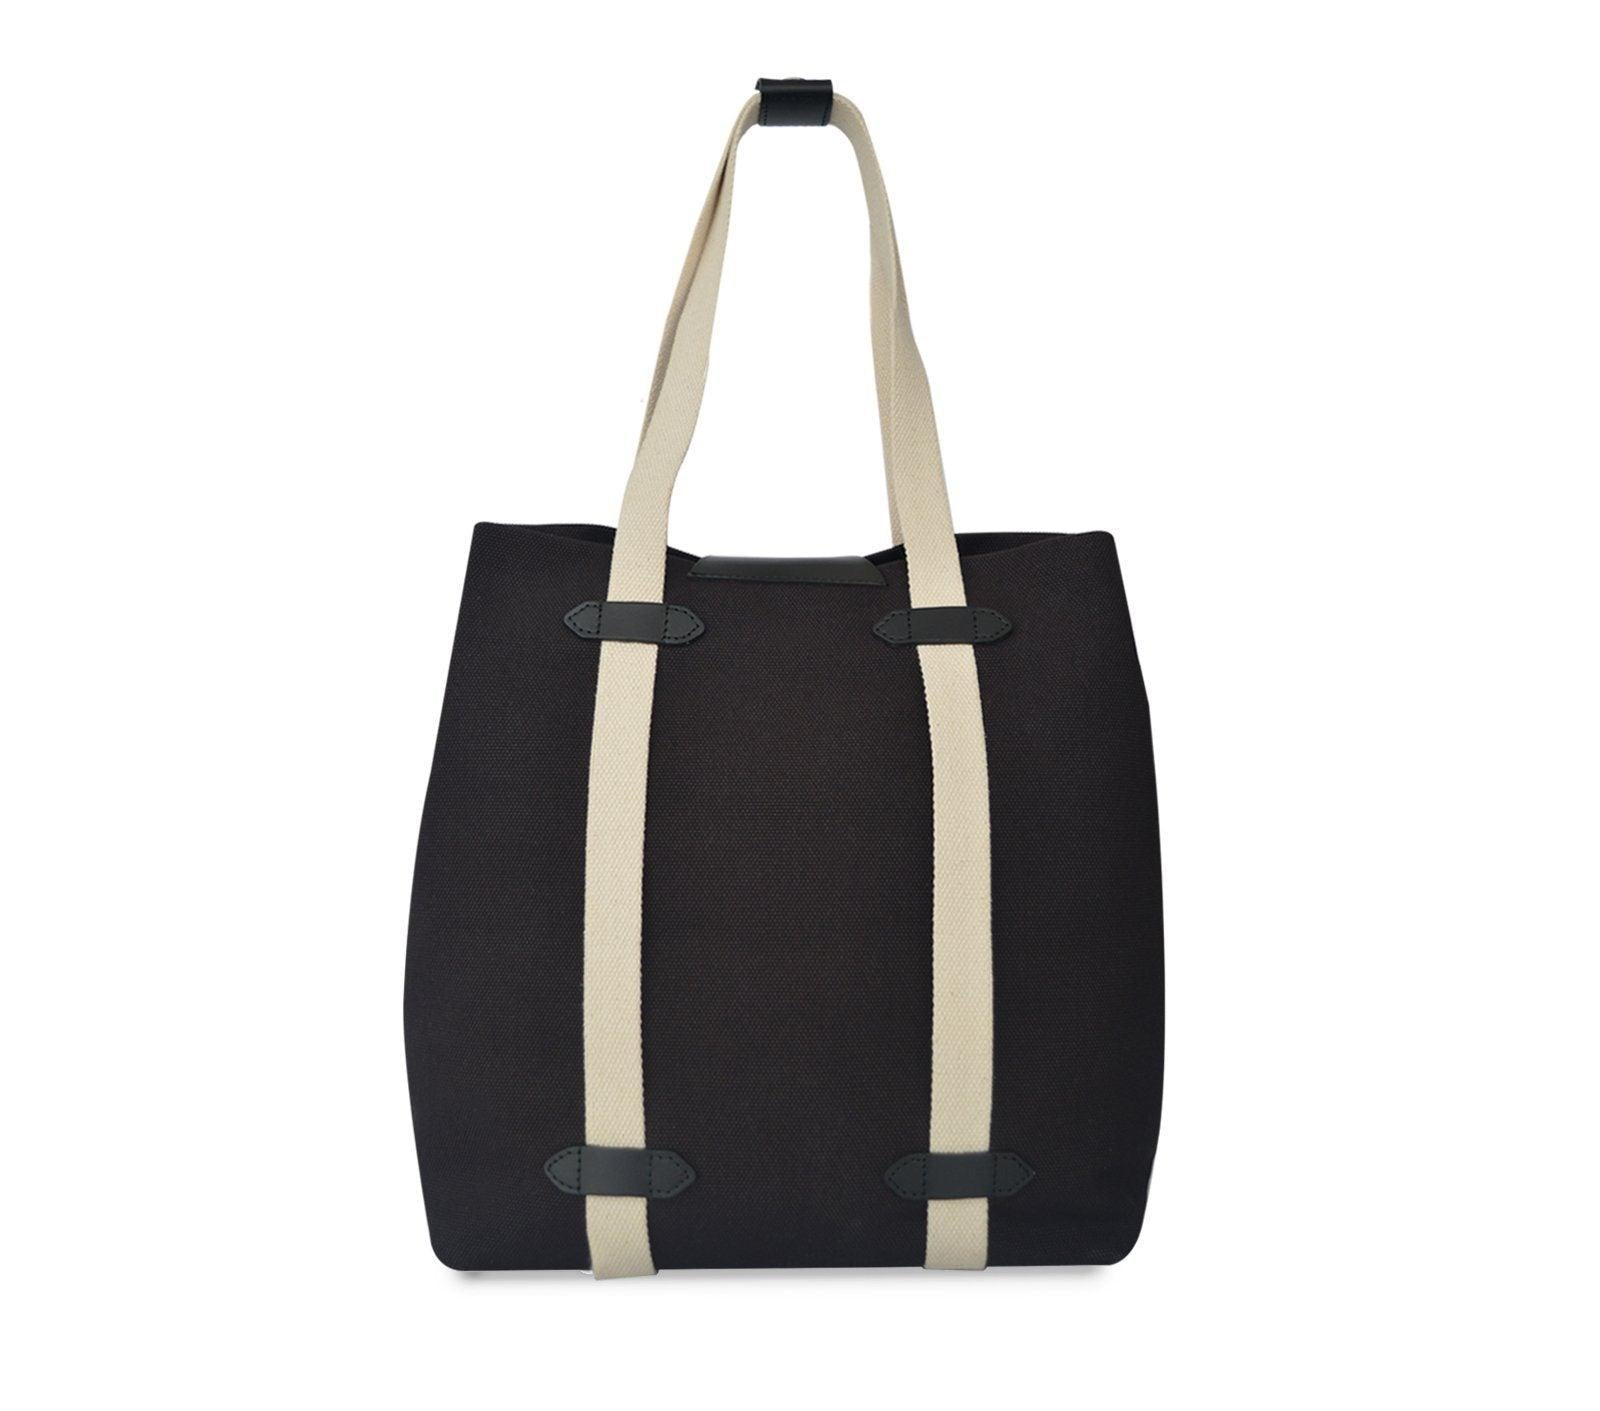 Buy Used Luxury Handbags | Resale Designer Purses | Used Designer Handbags  - The Vault Luxury Resale